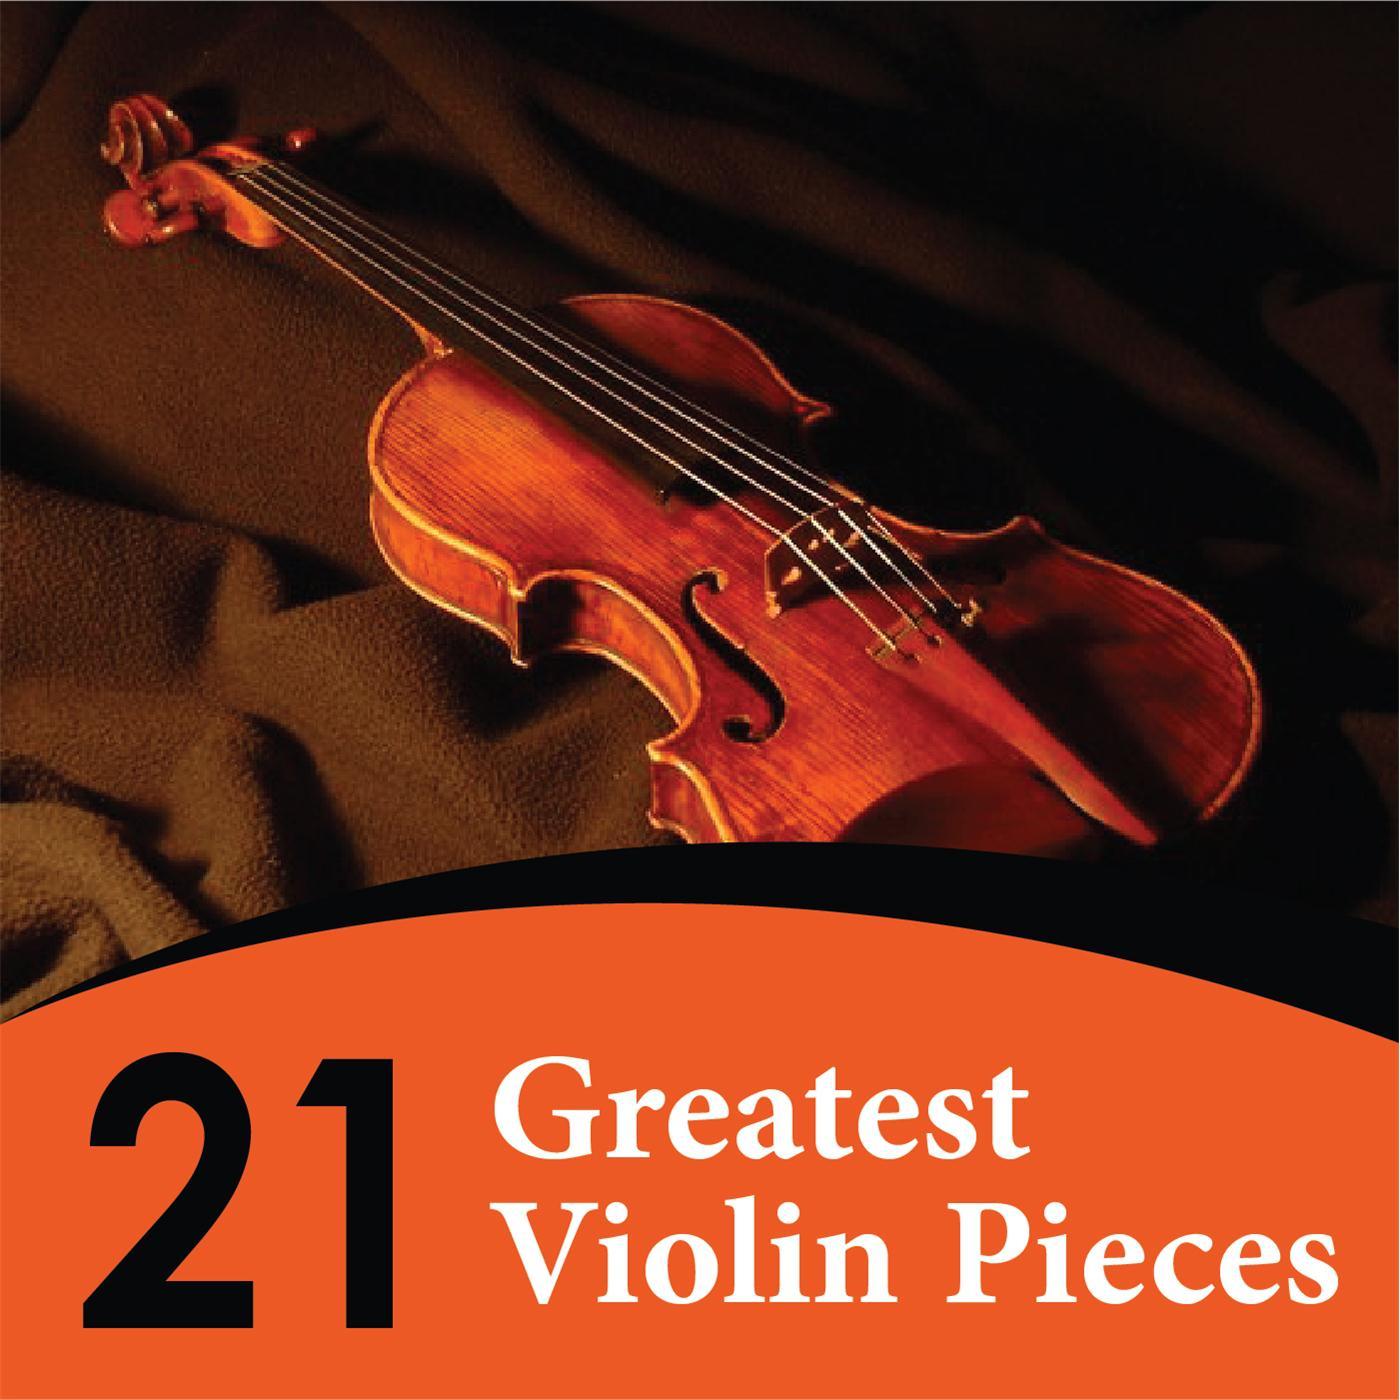 21 Greatest Violin Pieces